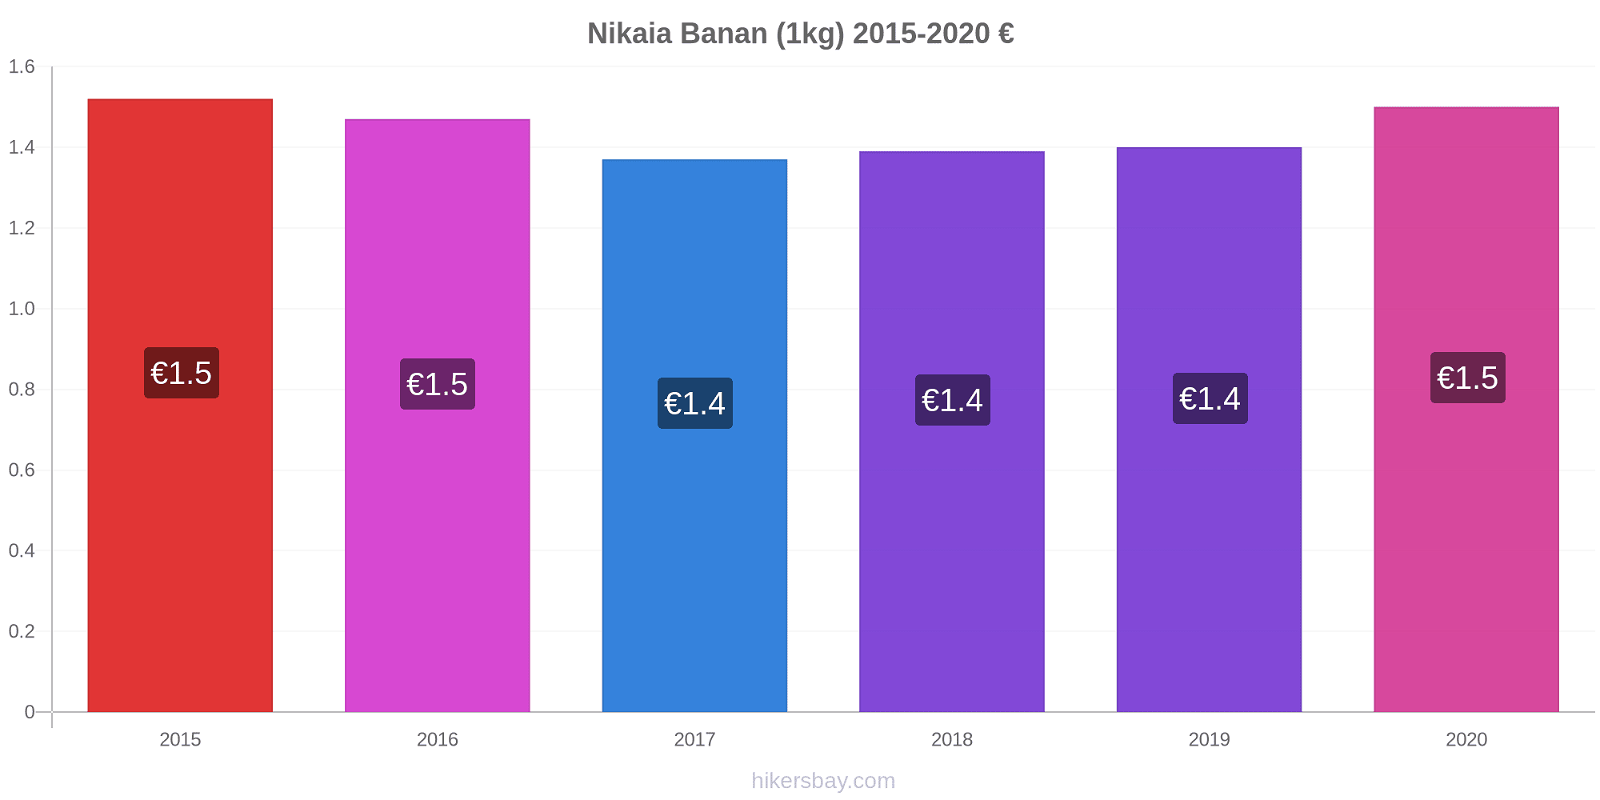 Nikaia prisendringer Banan (1kg) hikersbay.com